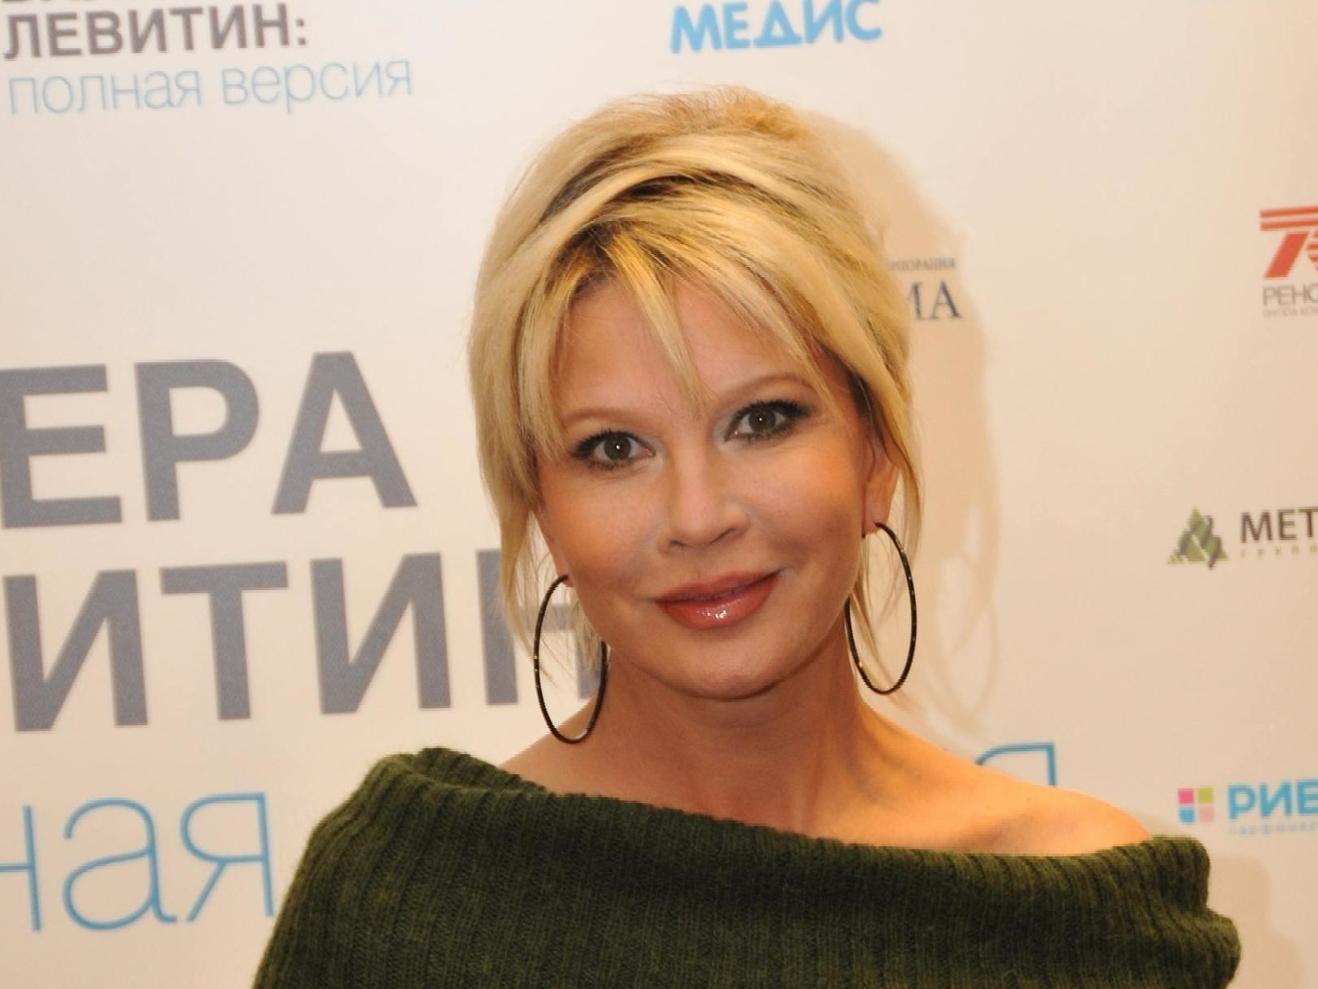 Татьяна Веденеева показала лицо после неудачной пластики